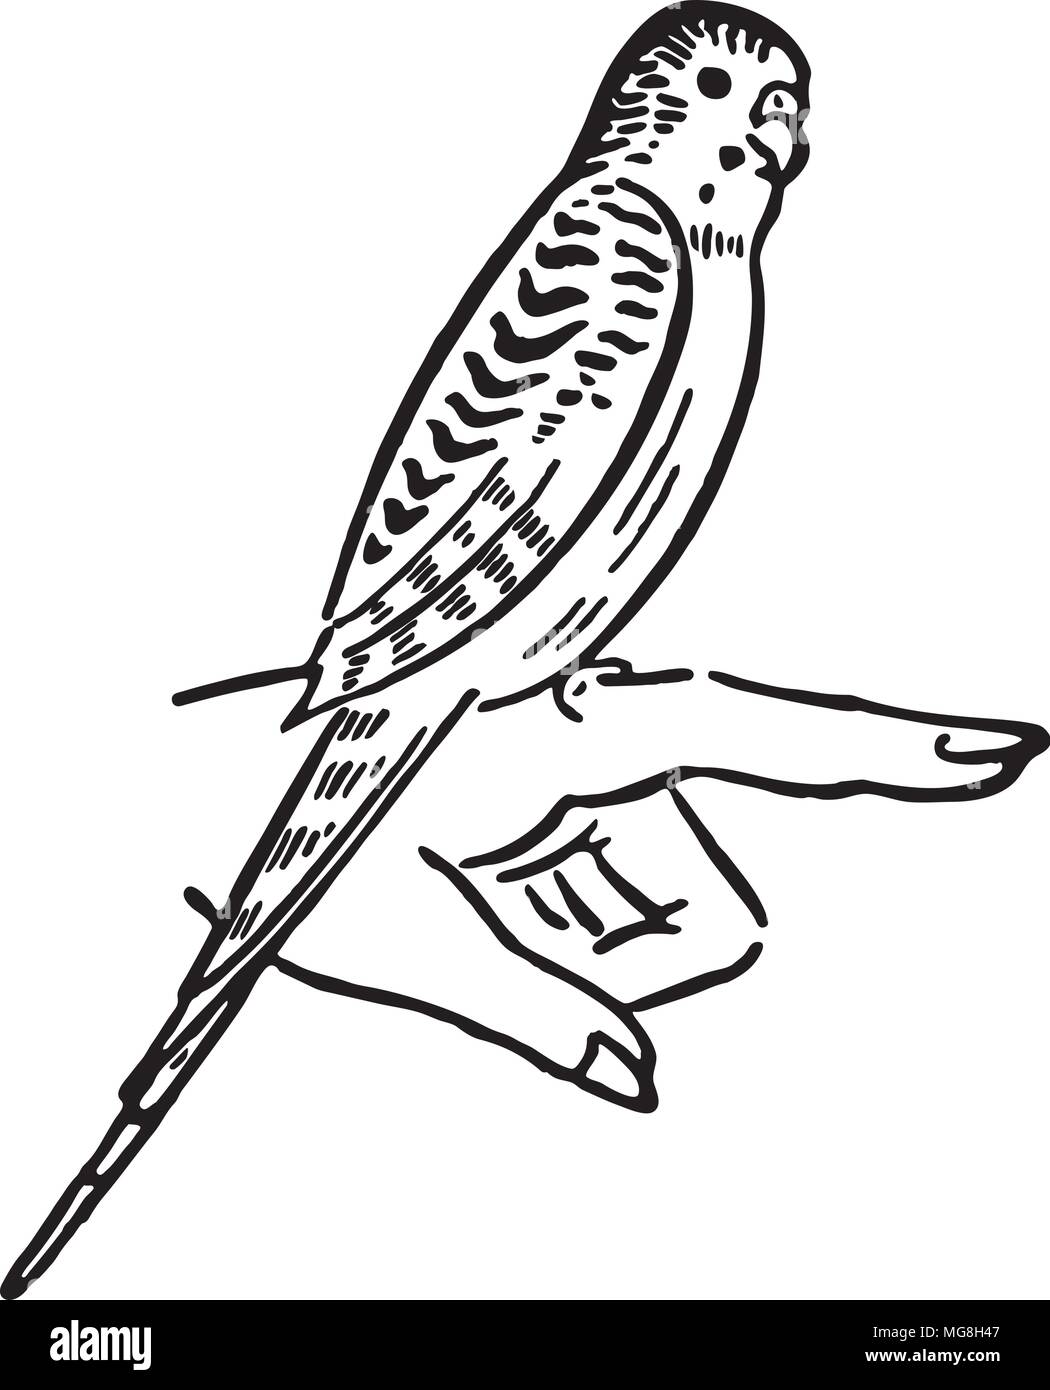 Волнистый попугай для печати черно-белый